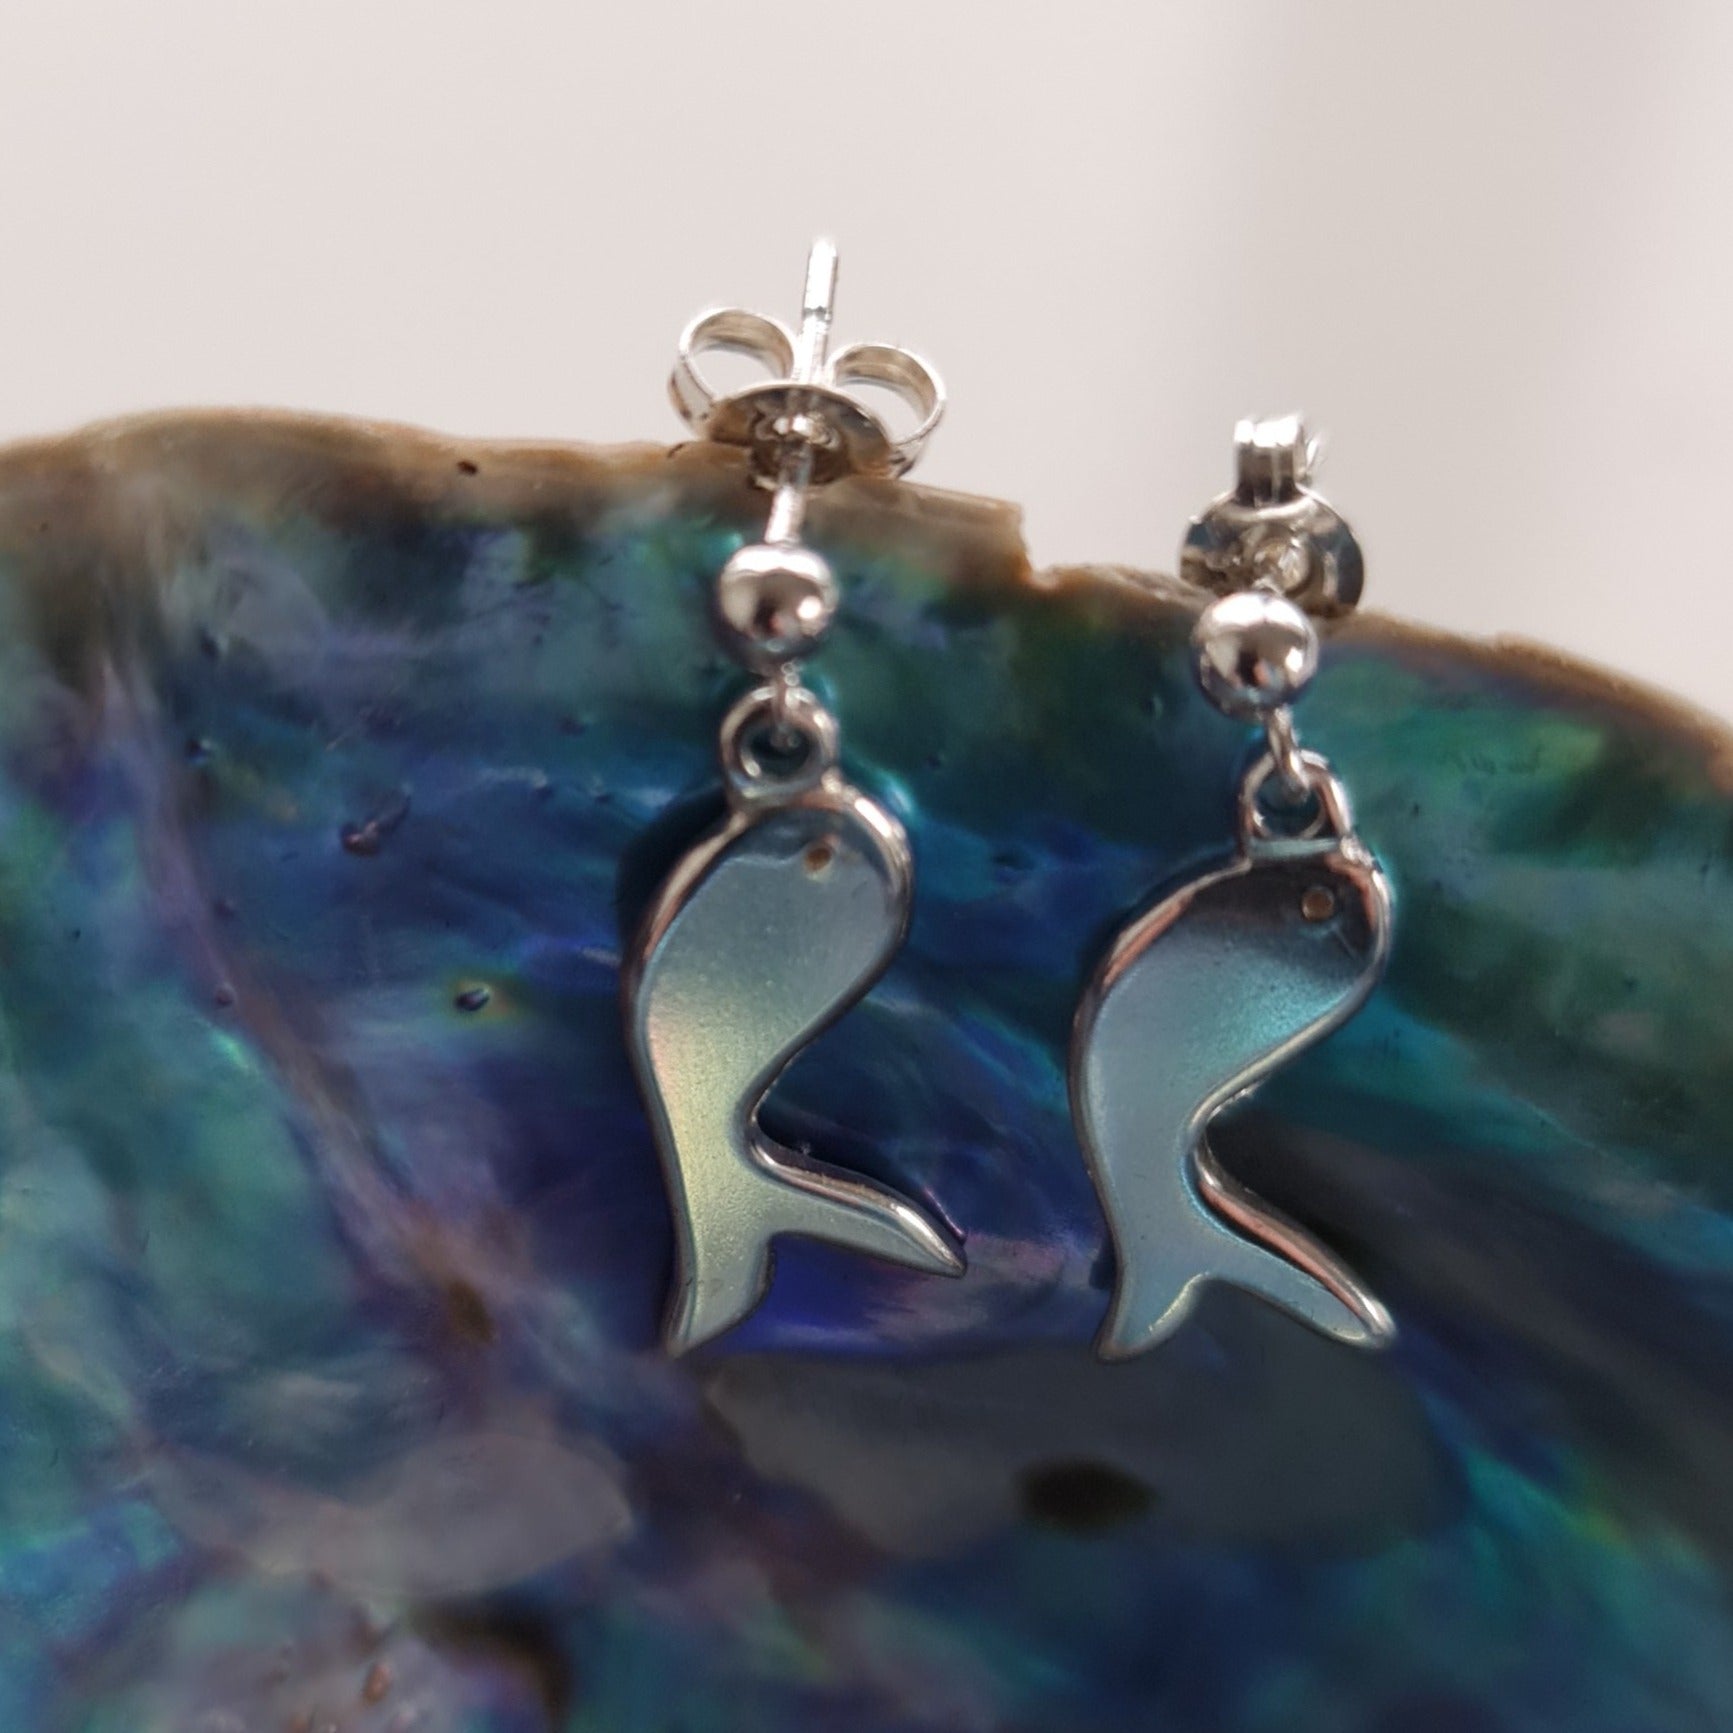 NZ Jeweller, NZ Jeweler, Sterling Silver Earrings, Earrings, Swanson Jeweller, Swanson Jeweler, fish earrings, fish jewellery, fish jewelry, bespoke jewellery, bespoke jewelry